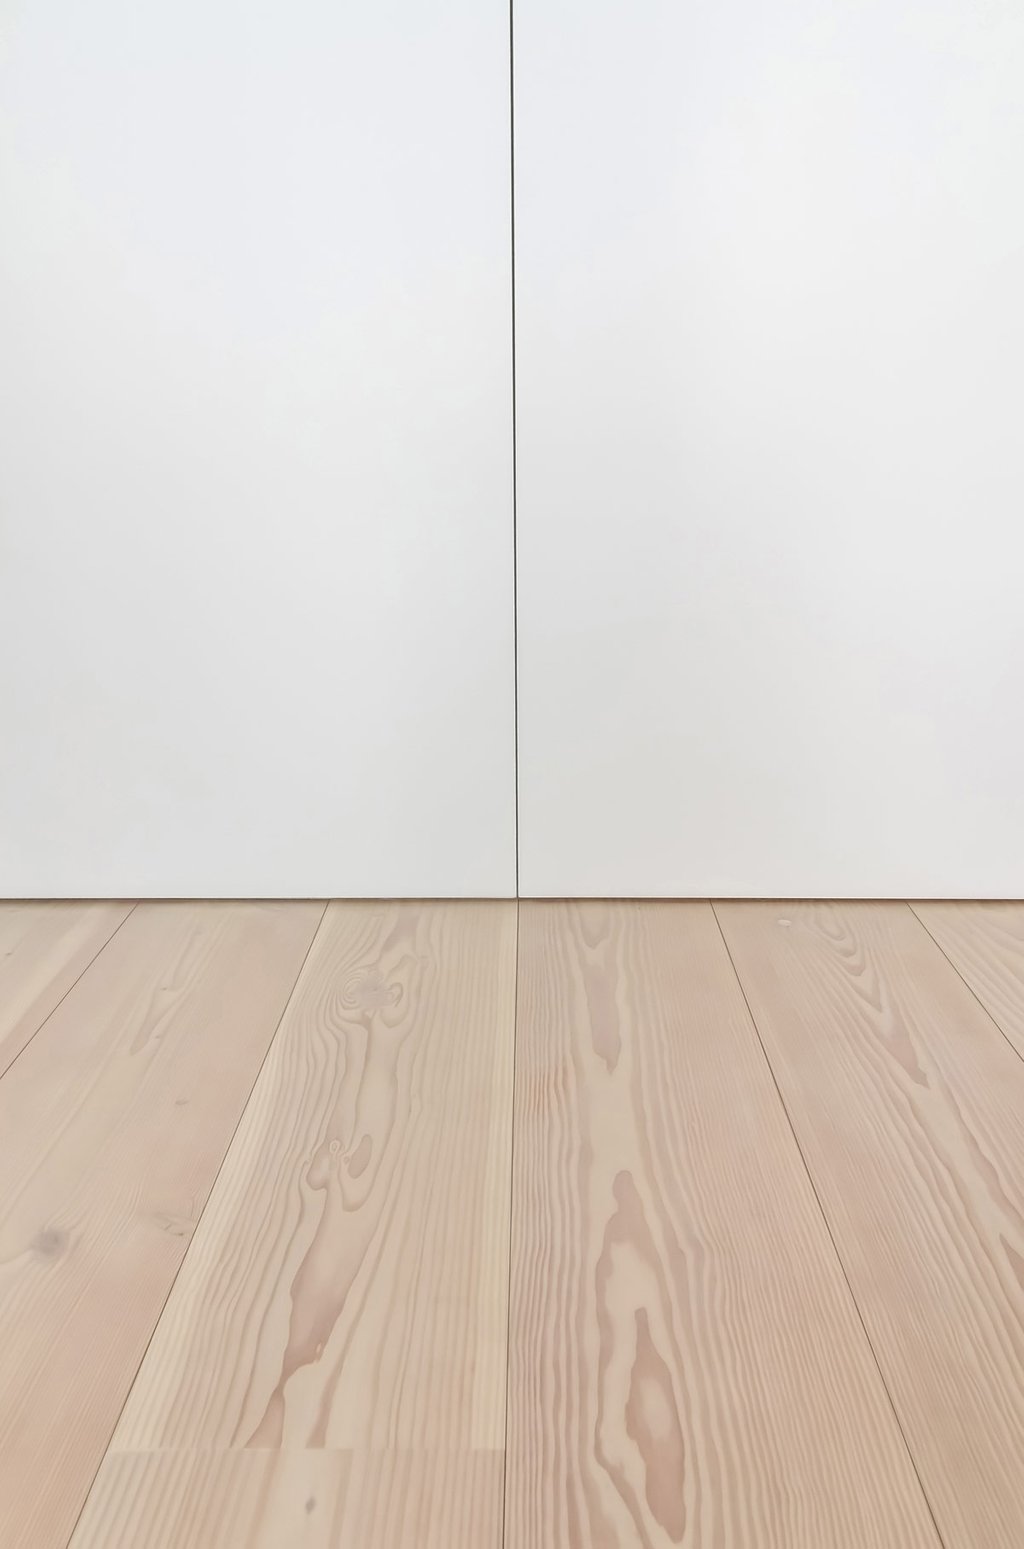 Không gian được lấy tông màu trắng làm chủ đạo, kết hợp với sàn gỗ sáng màu tạo cảm giác hiện đại, trẻ trung và năng động.